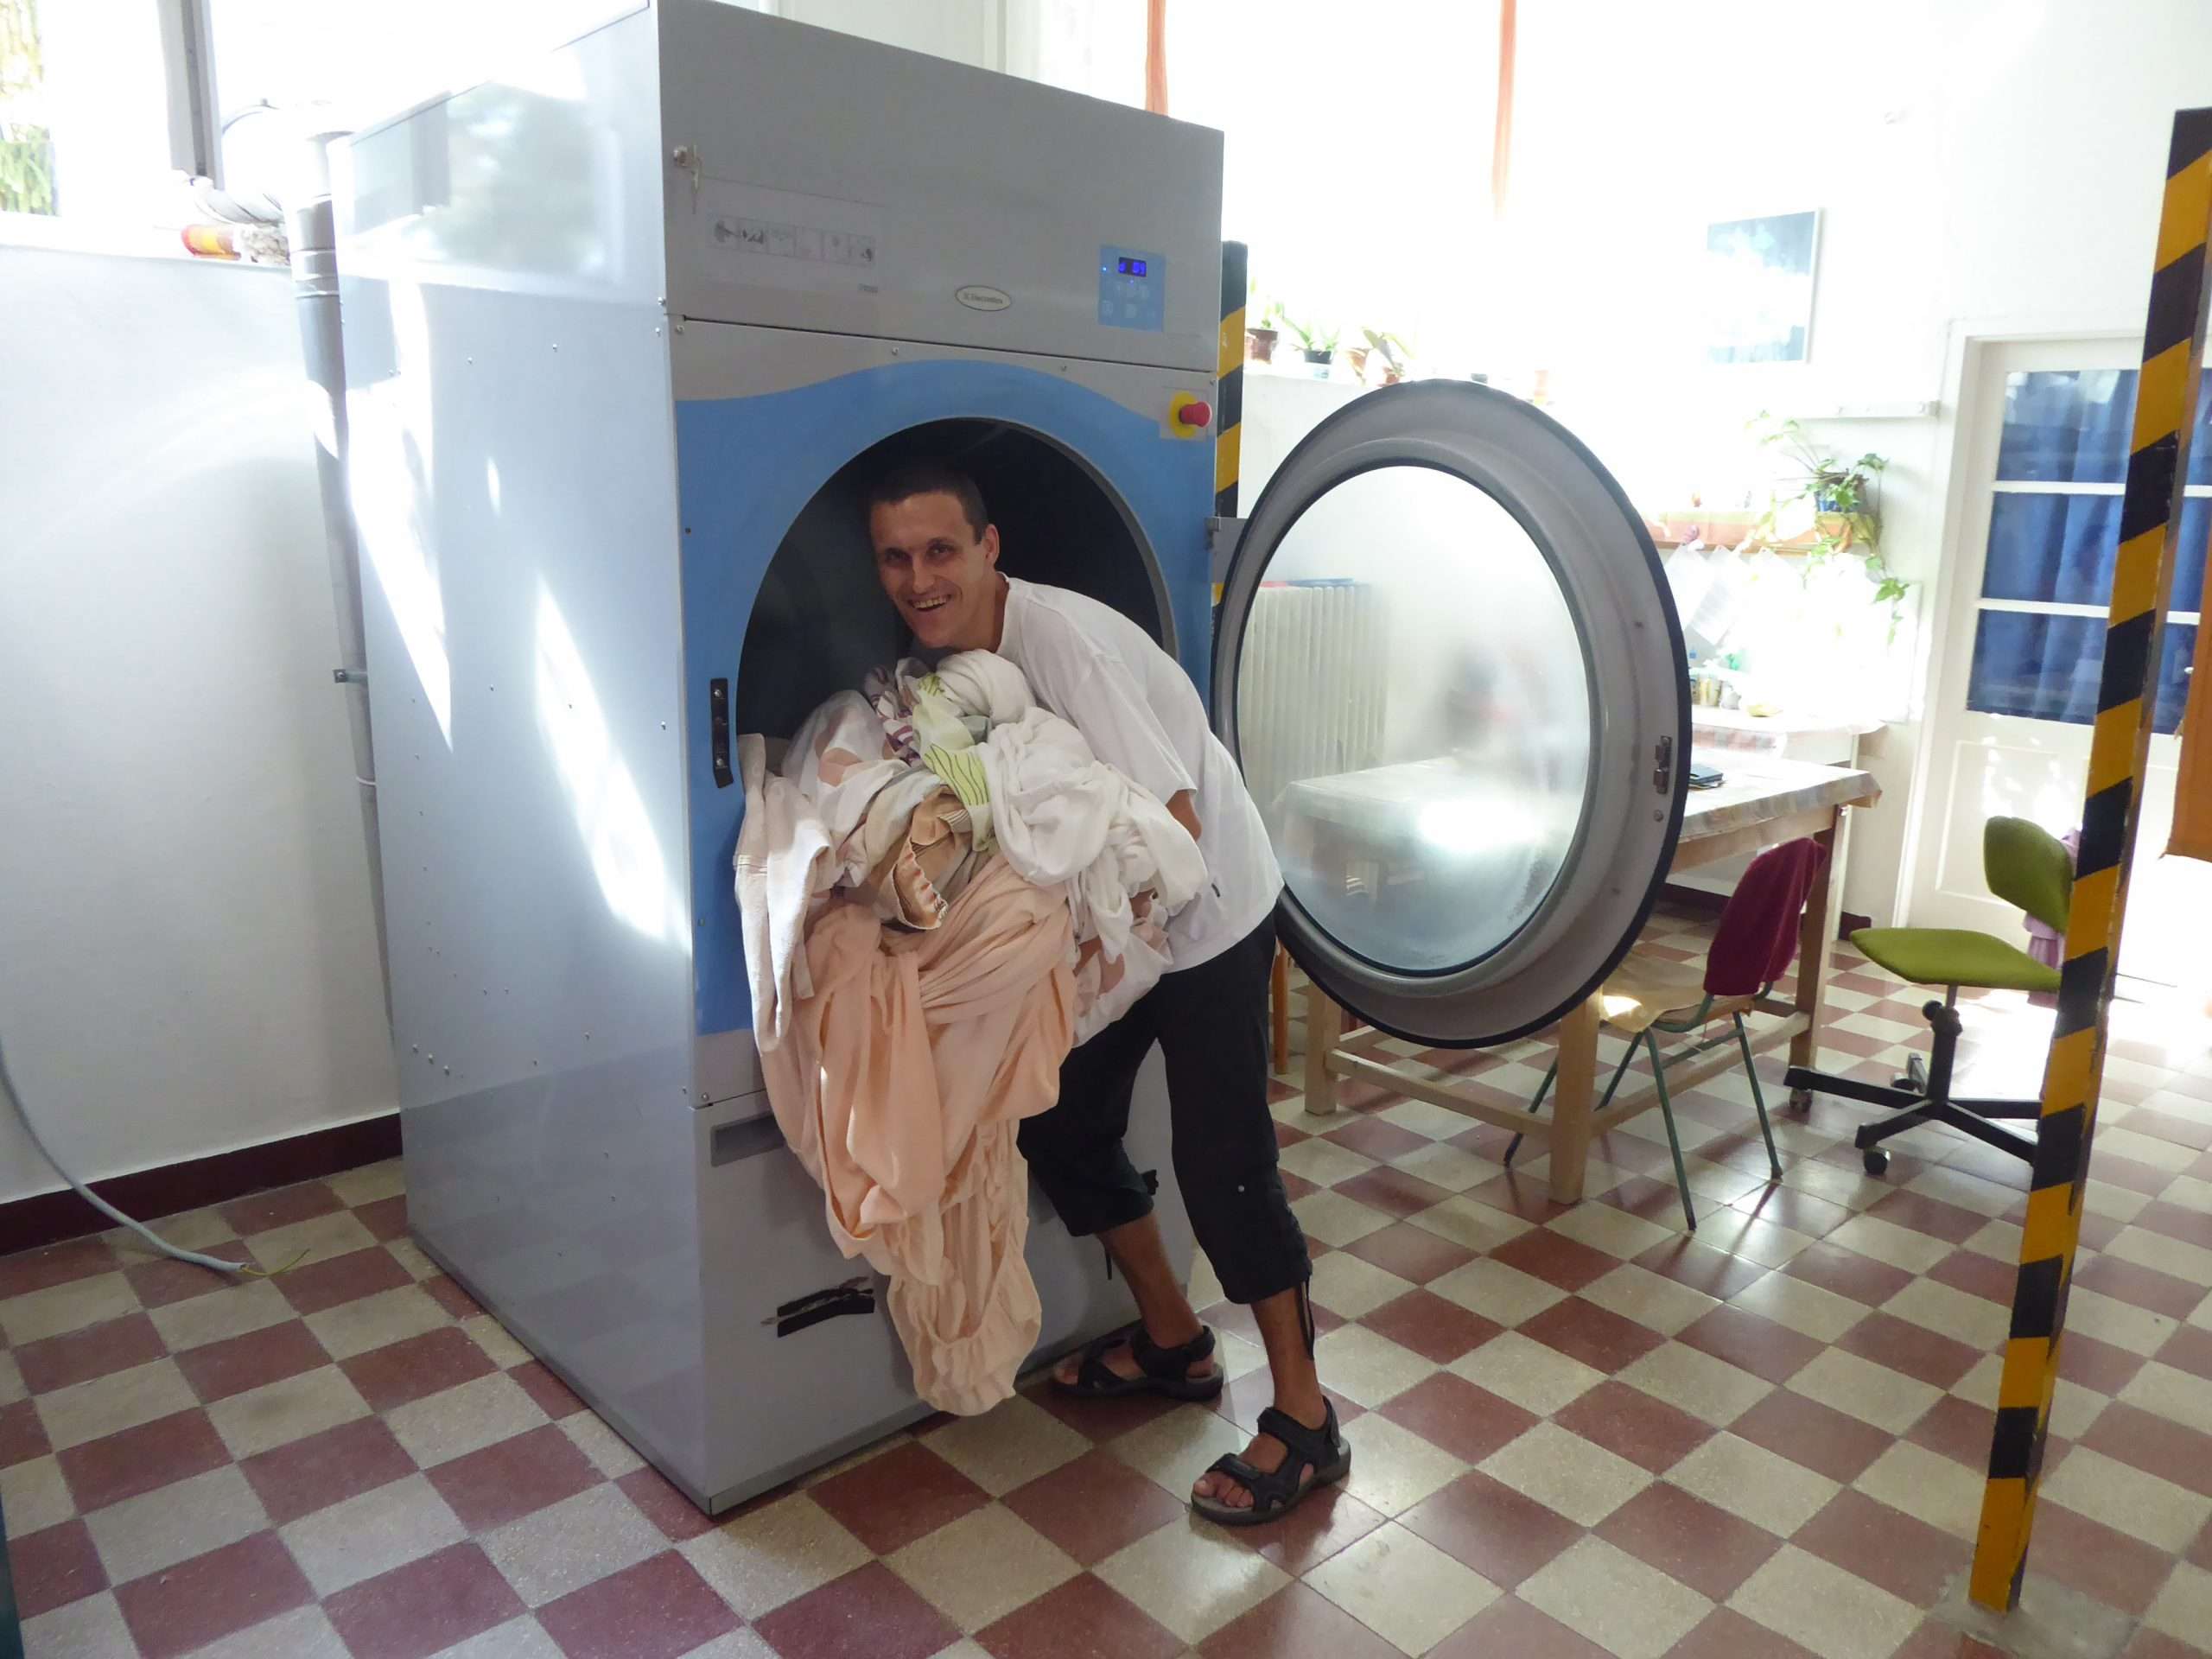 A fotón Deli István látható a mosodában, munkavégzés közben. A mosoda napfényes, középen egy nagy ipari mosógép látható szürke és kék színben. A mosógép ajtaja nyitva, a pályázó a mosott ruhákat szedi ki a gépből.